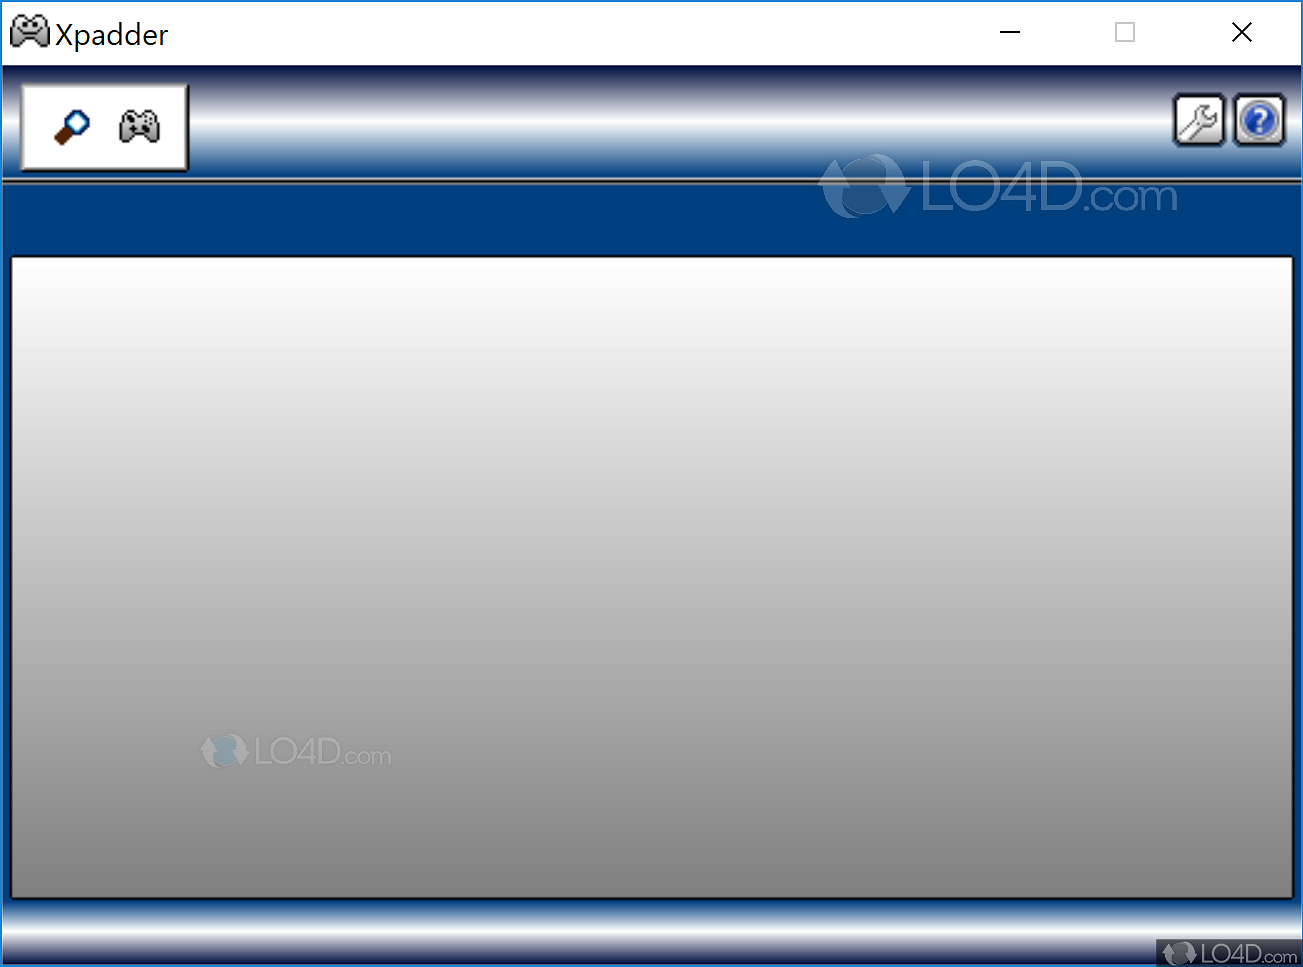 xpadder for windows 8.1